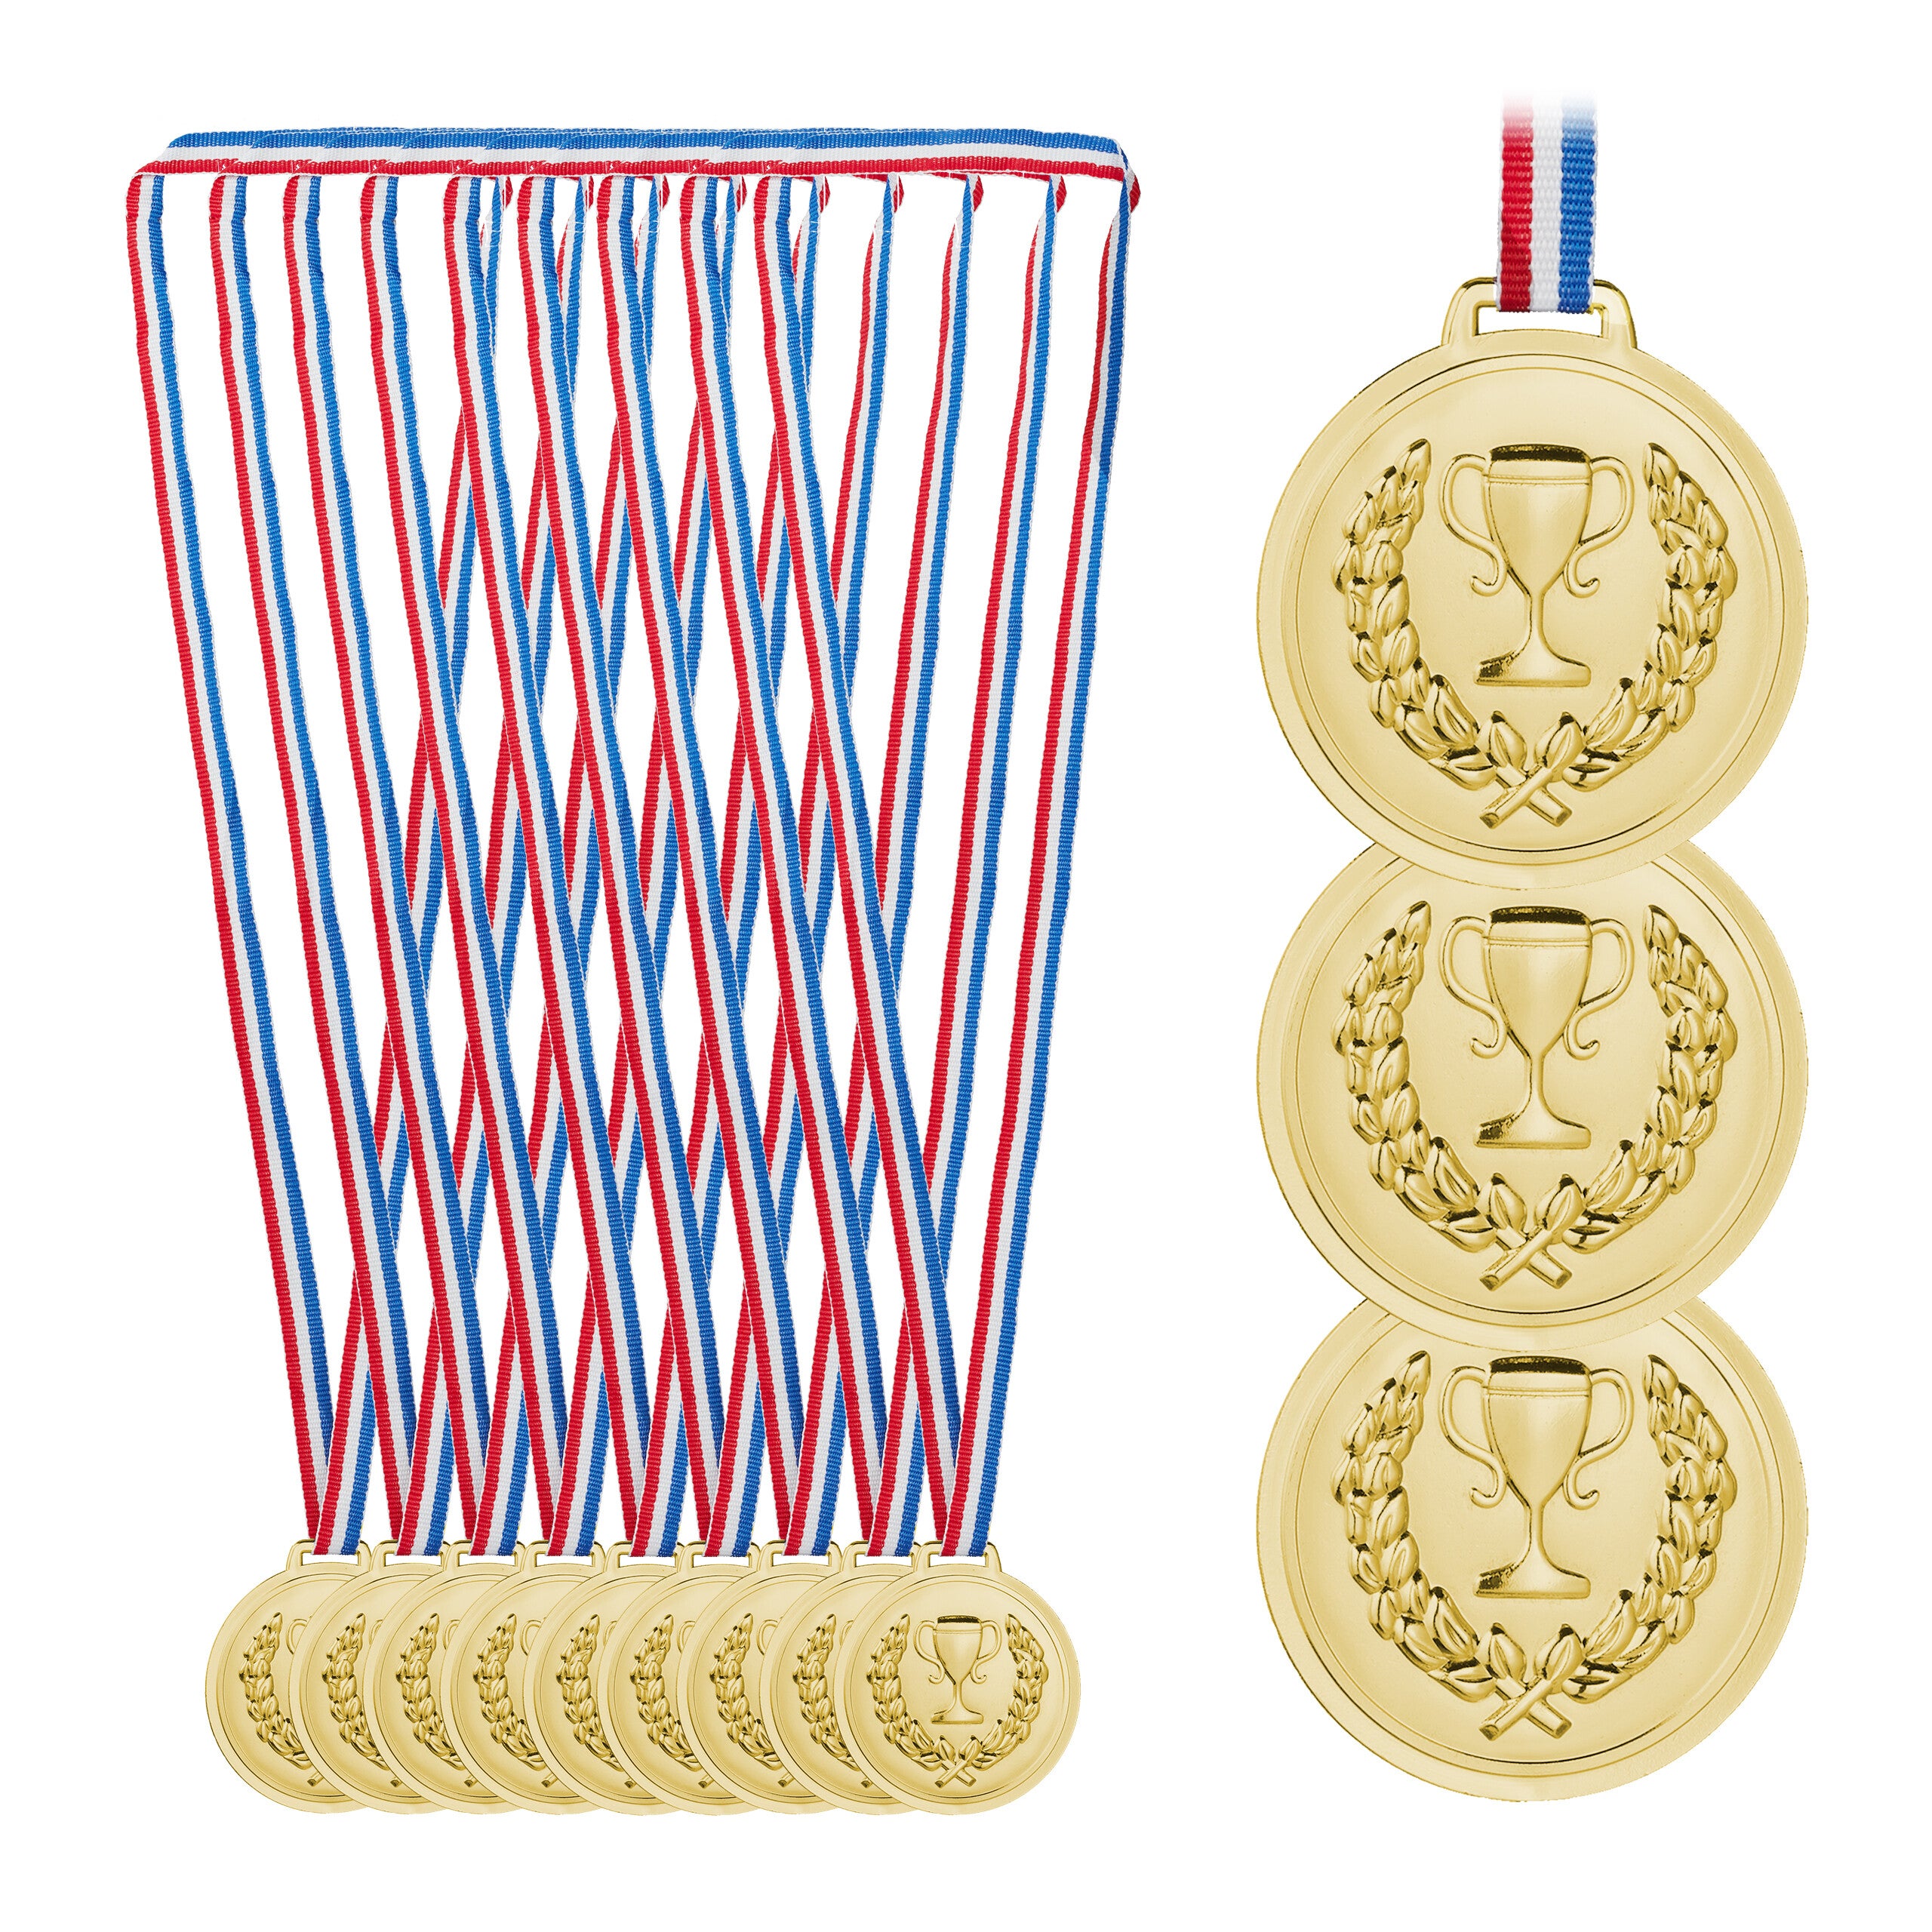 Acheter ICI en ligne lot de 12 médailles pour enfants